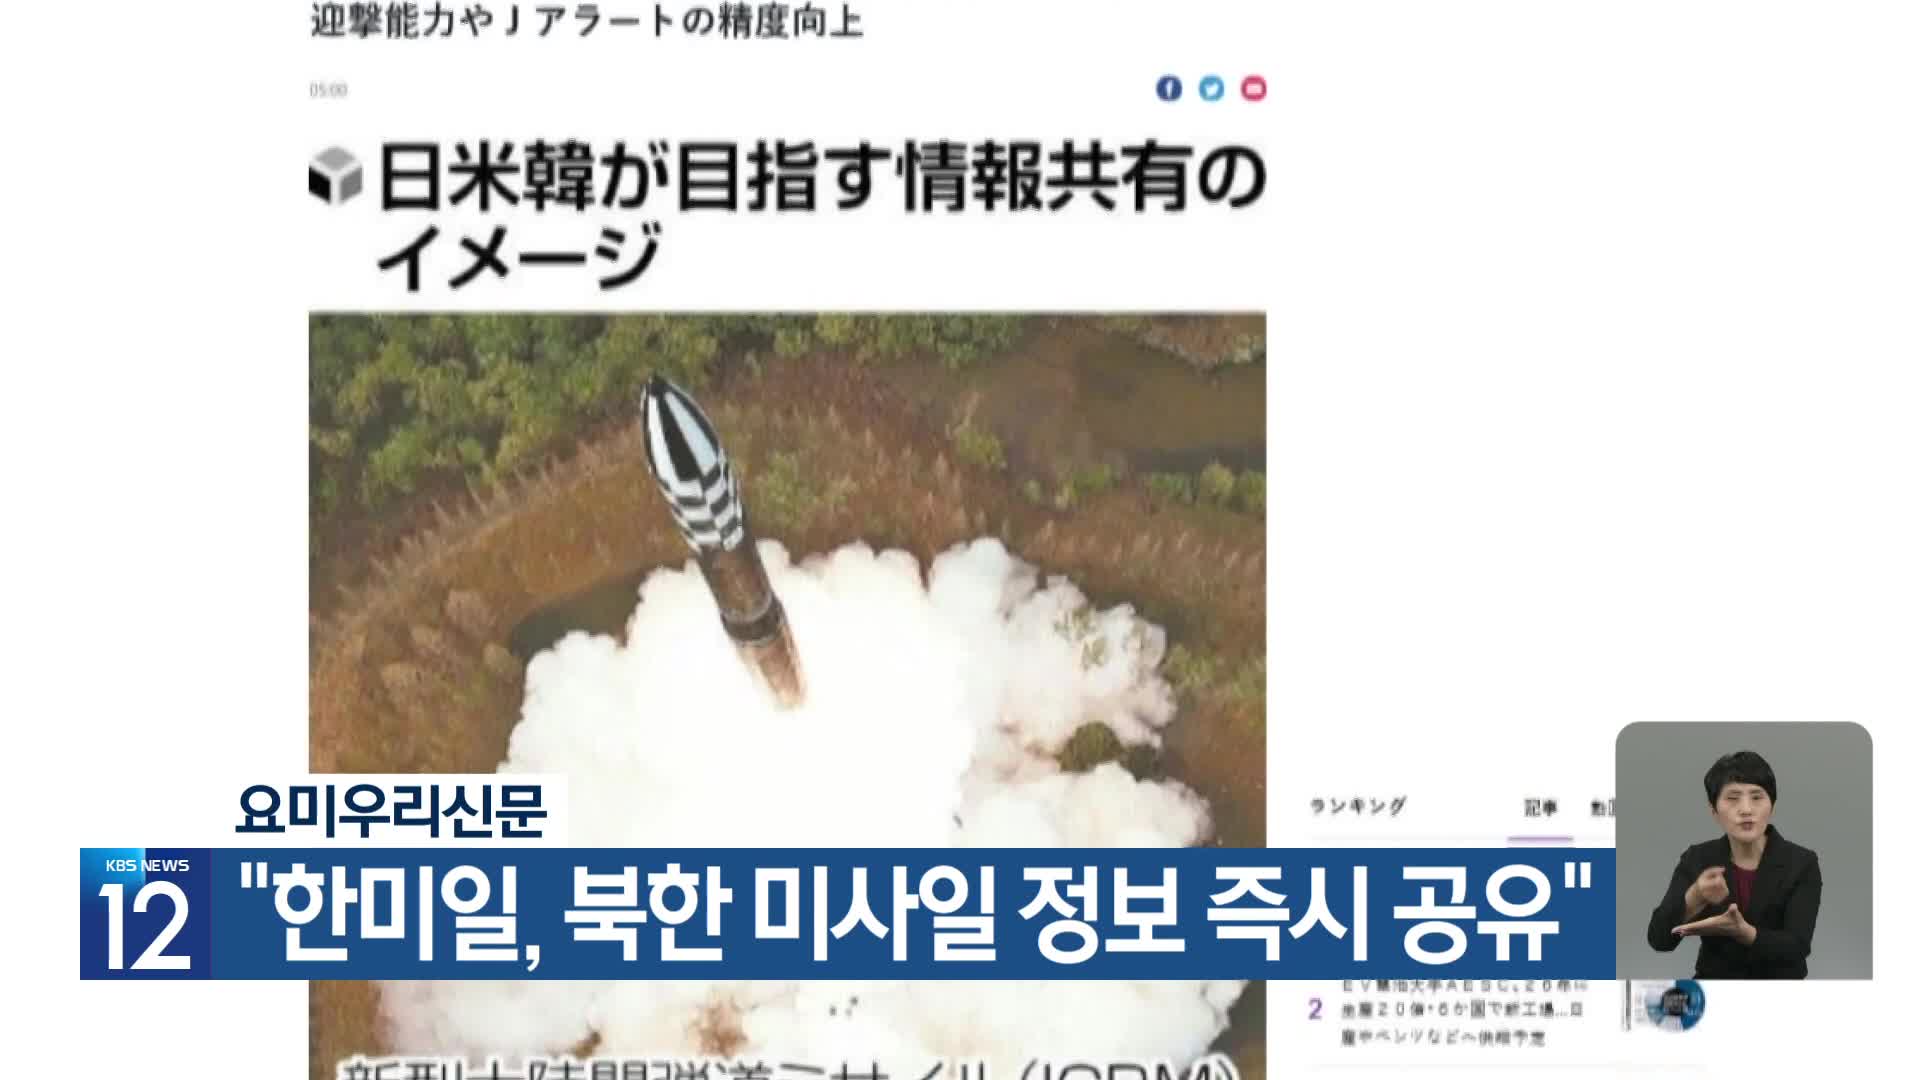 요미우리신문 “한미일, 북한 미사일 정보 즉시 공유”